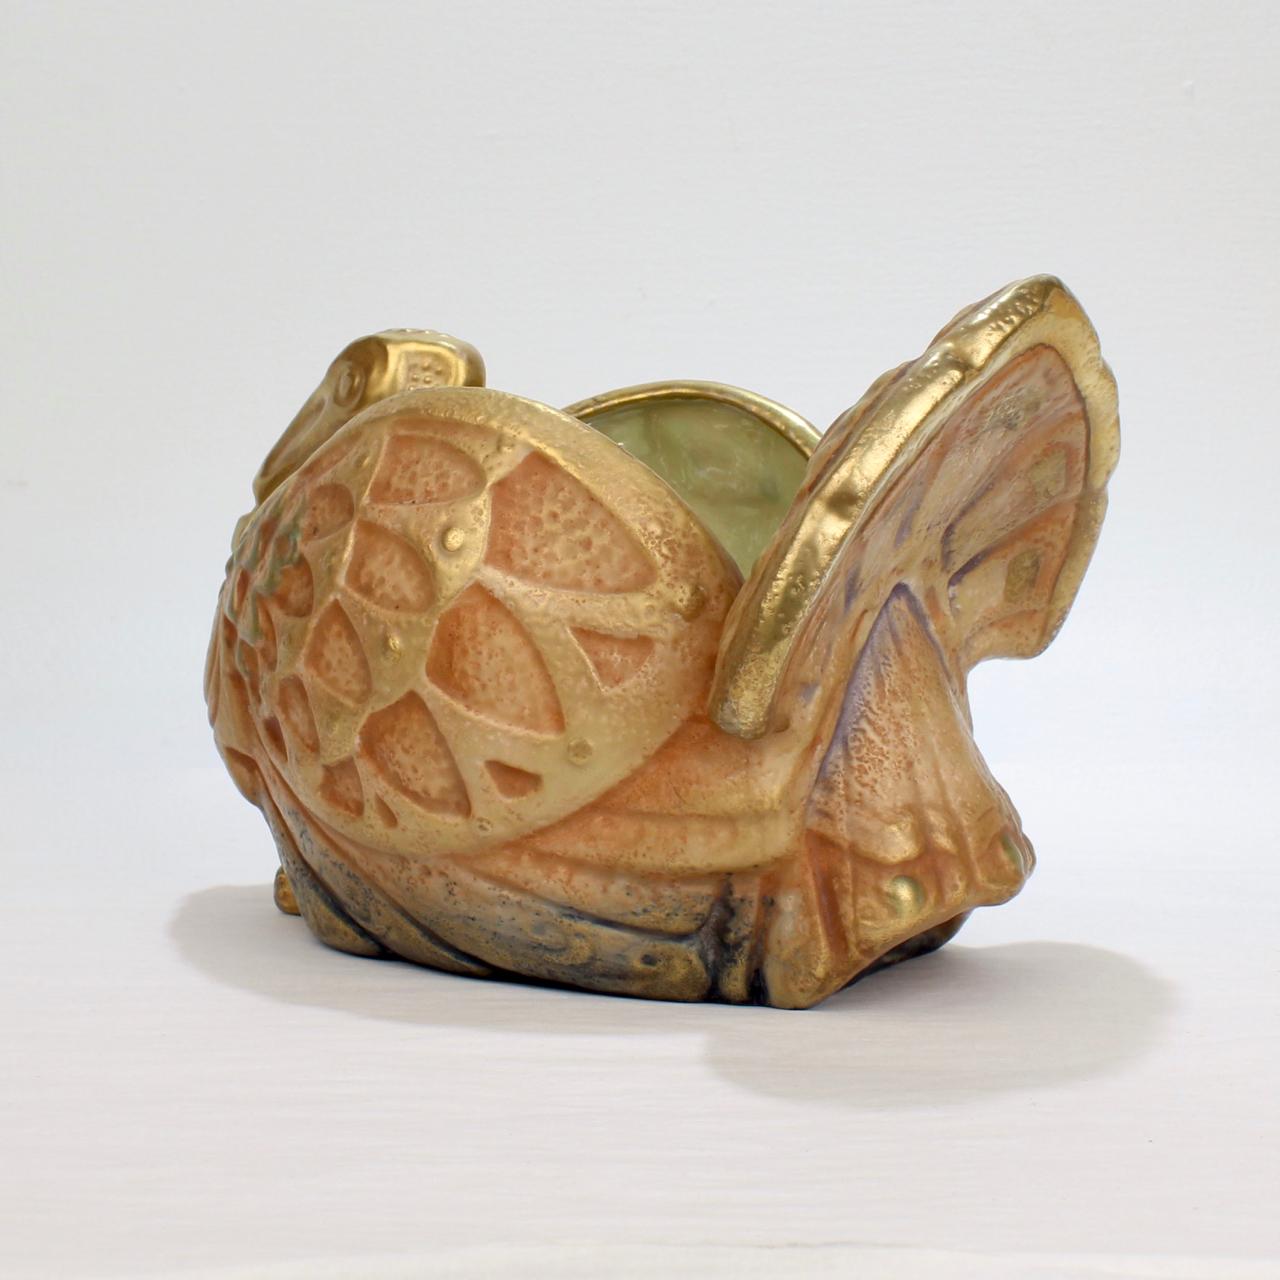 Antique Art Nouveau Imperial Amphora Pottery Turkey-Form Jardinière or Vase 1